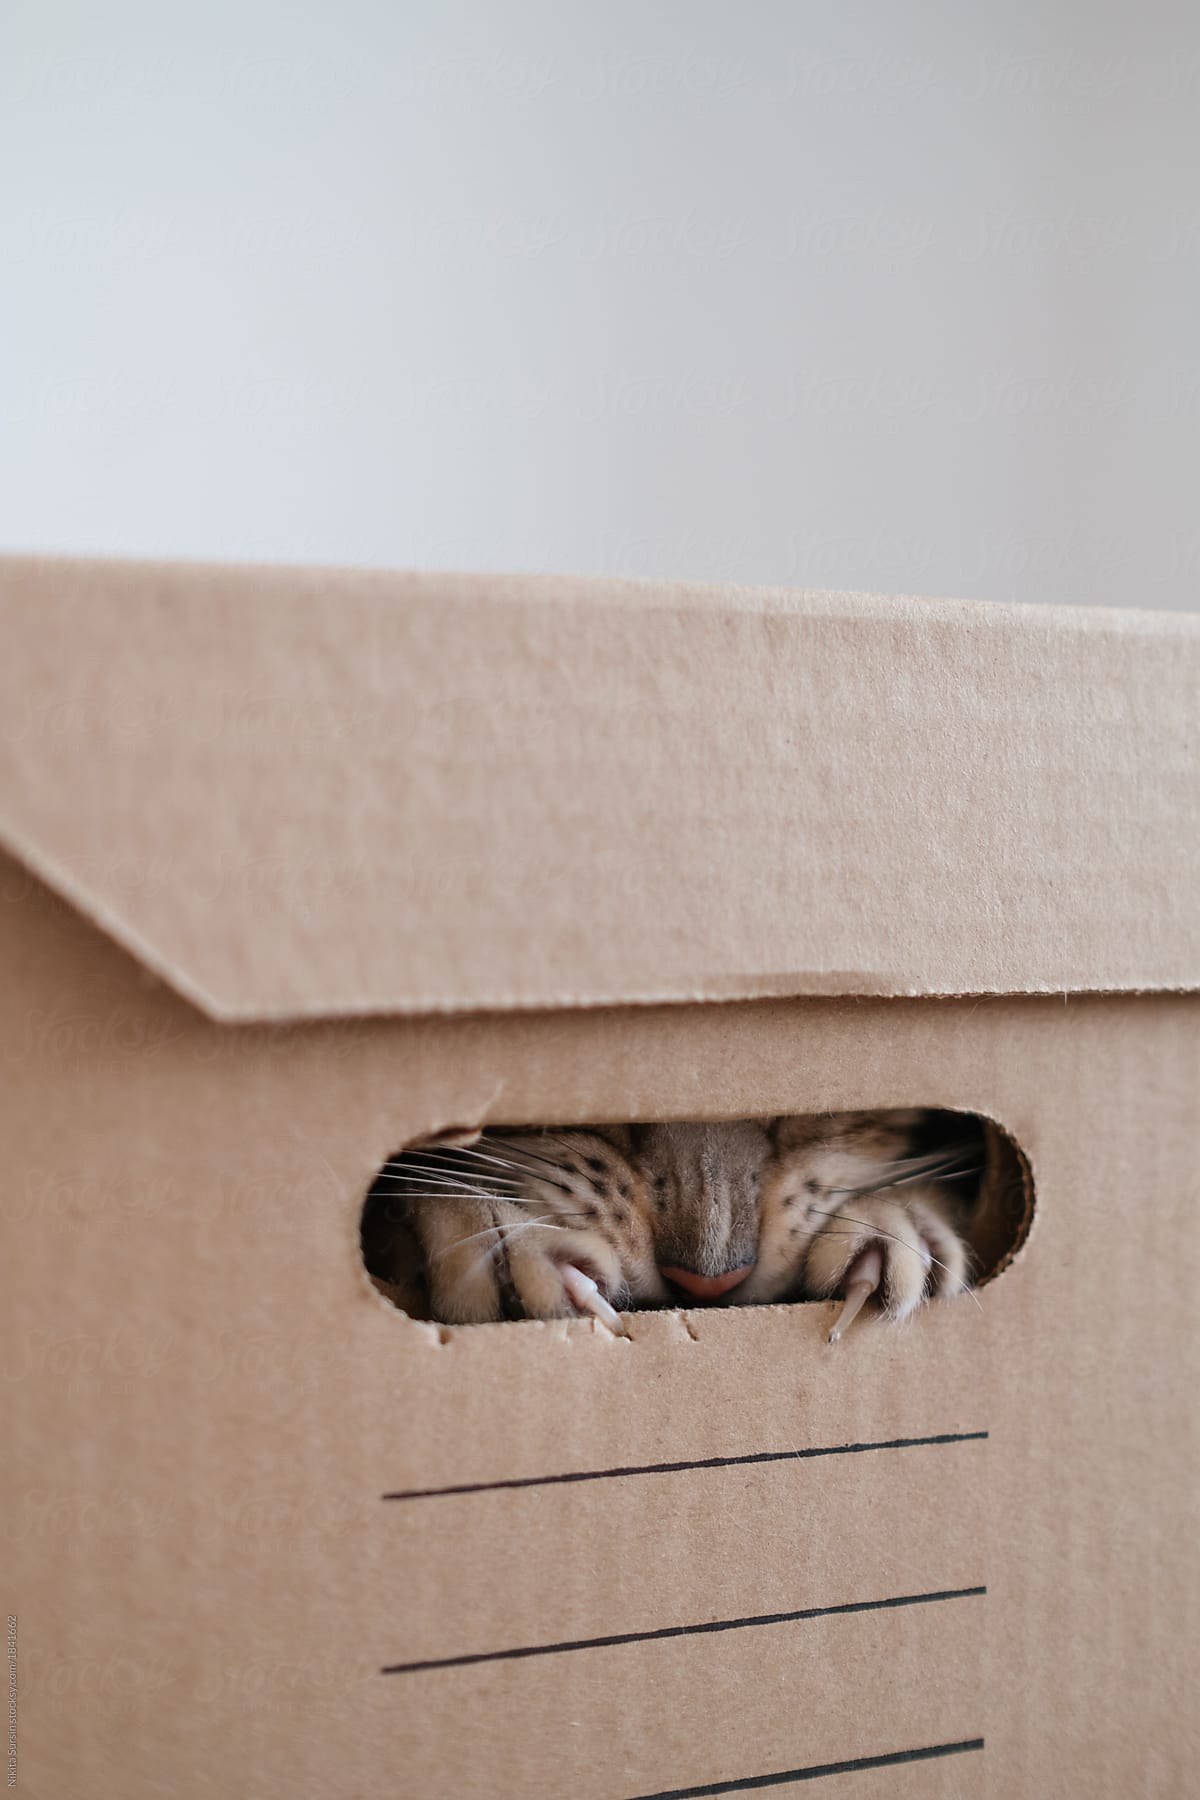 A cat plays hide and seek in a cardboard box